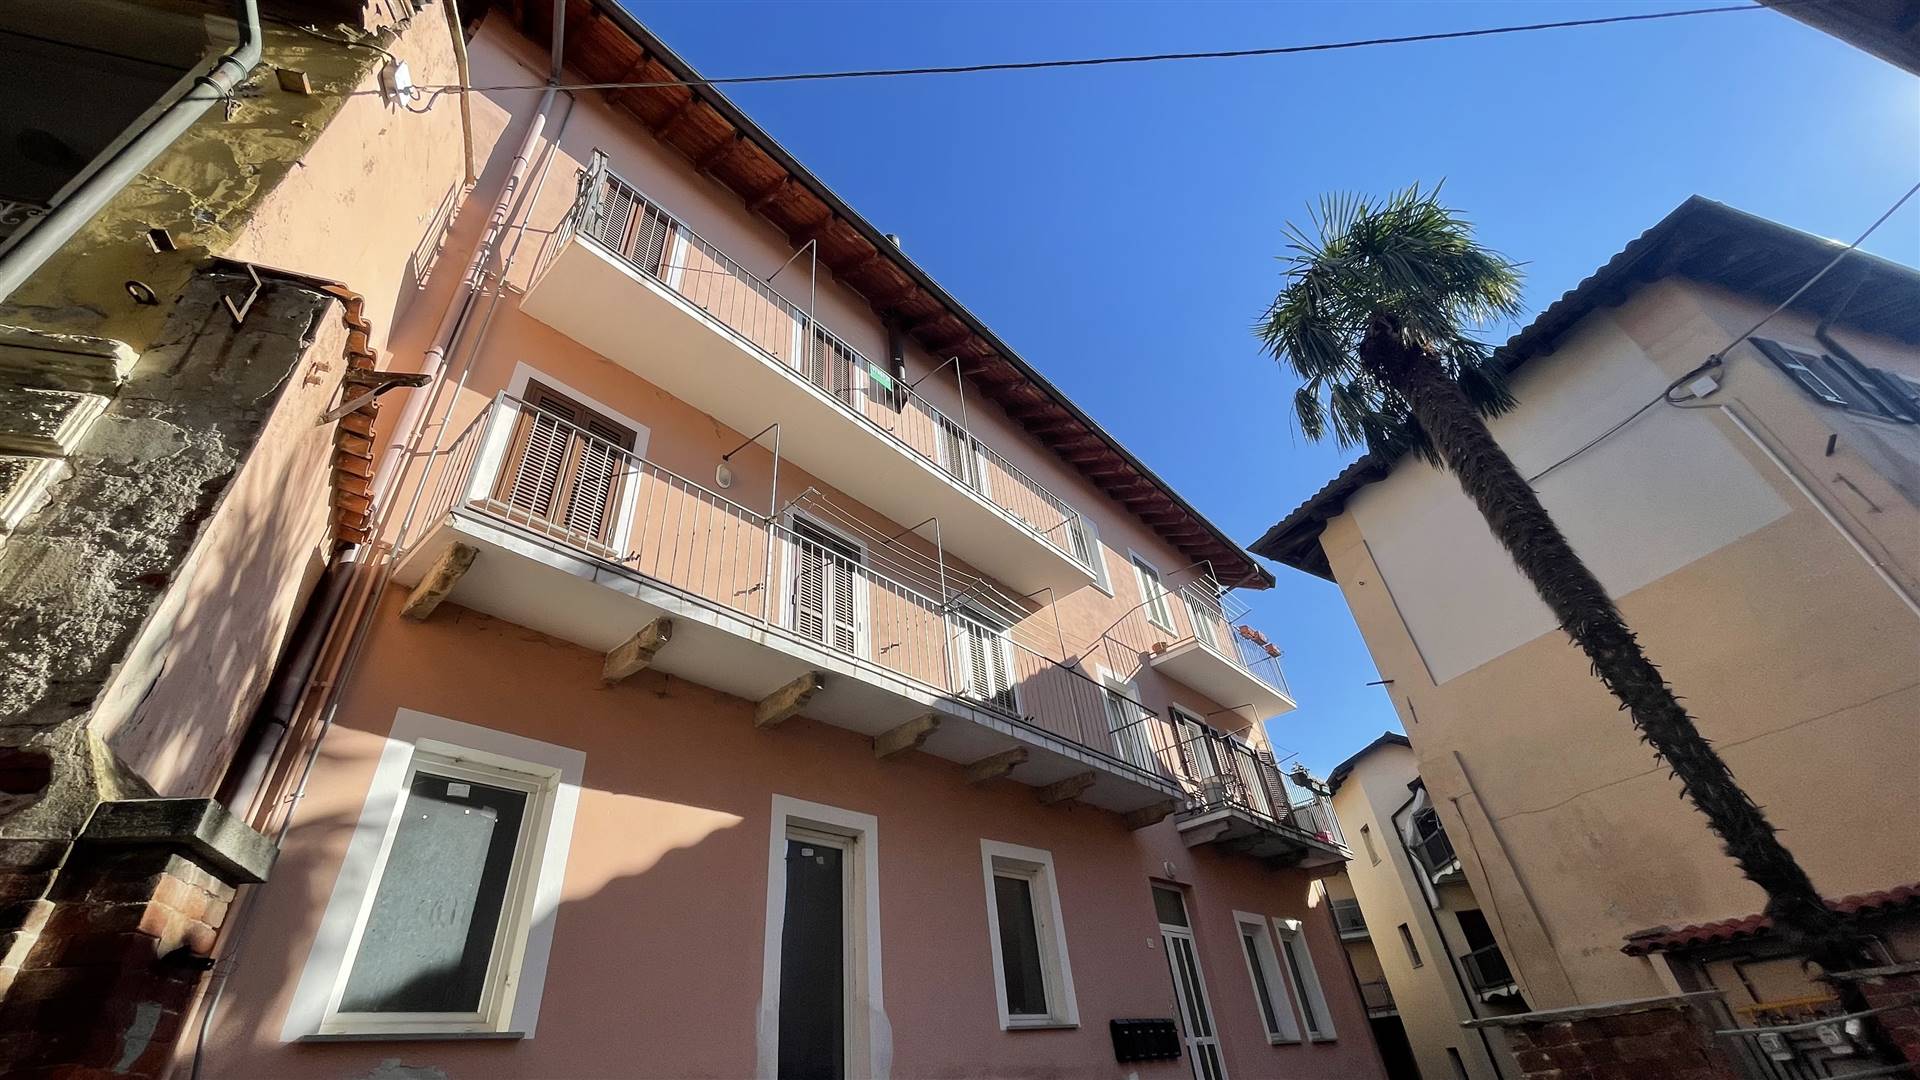 Appartamento in vendita a Sordevolo, 4 locali, prezzo € 48.000 | PortaleAgenzieImmobiliari.it